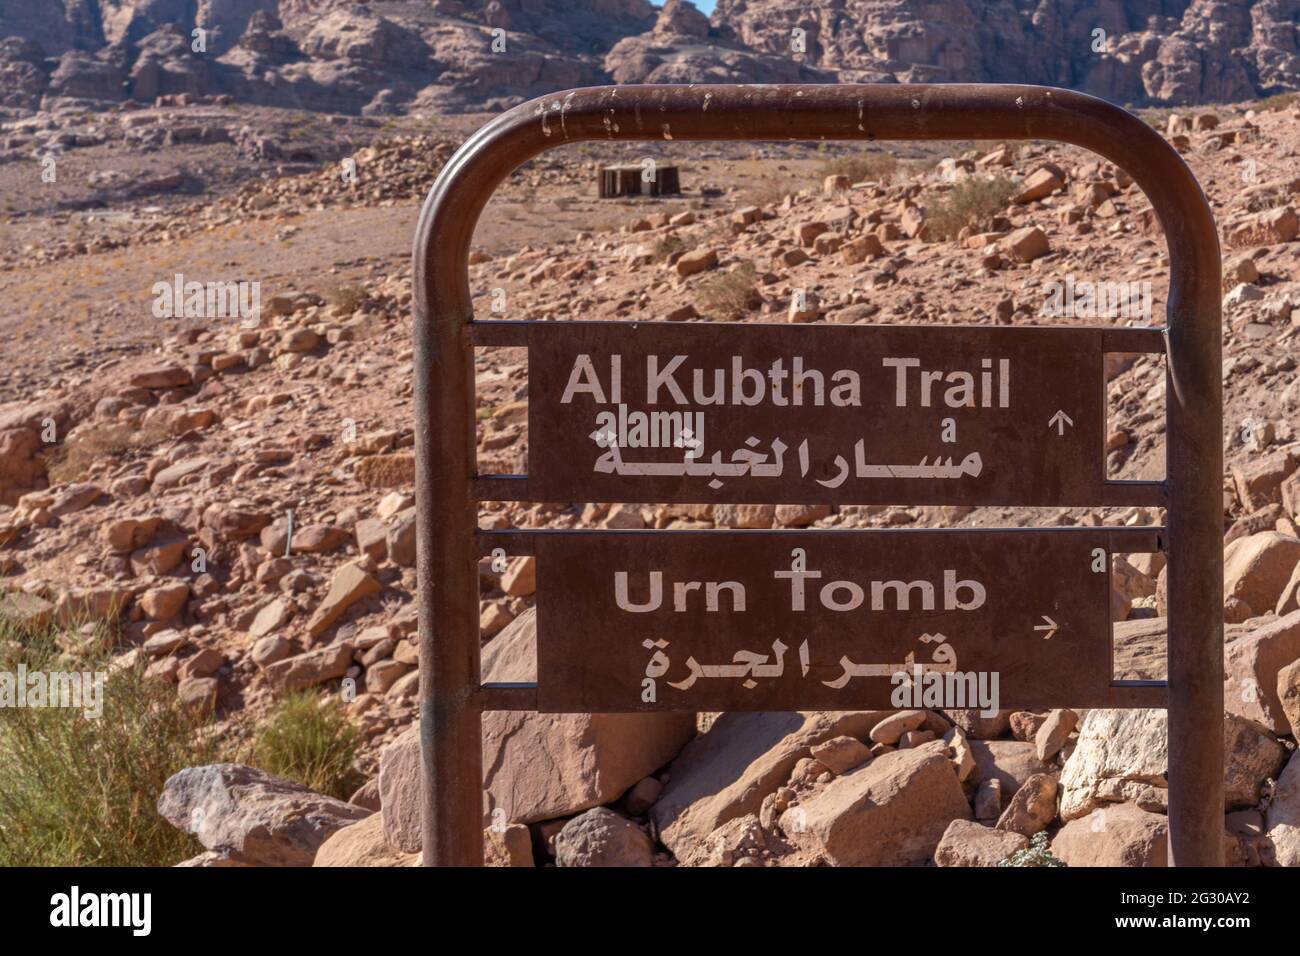 Segno direzionale in inglese e arabo al sentiero al-kubtha e tomba urna, petra, giordania Foto Stock